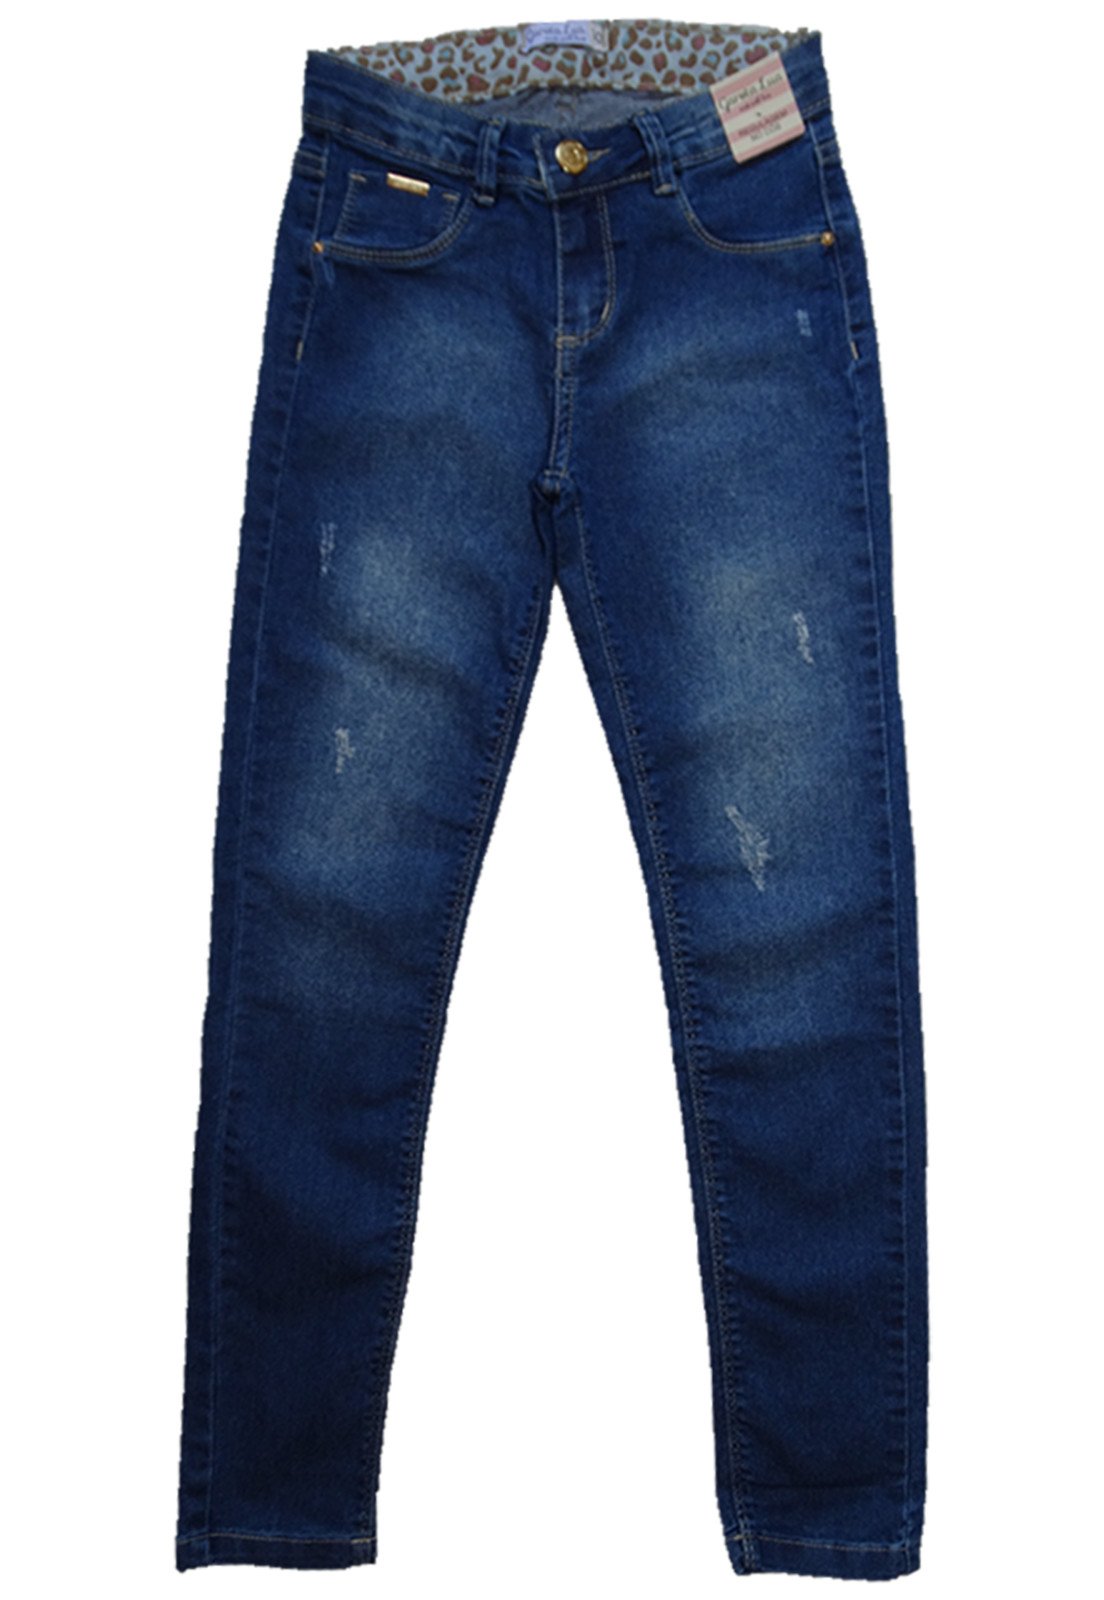 calça jeans masculina infanto juvenil